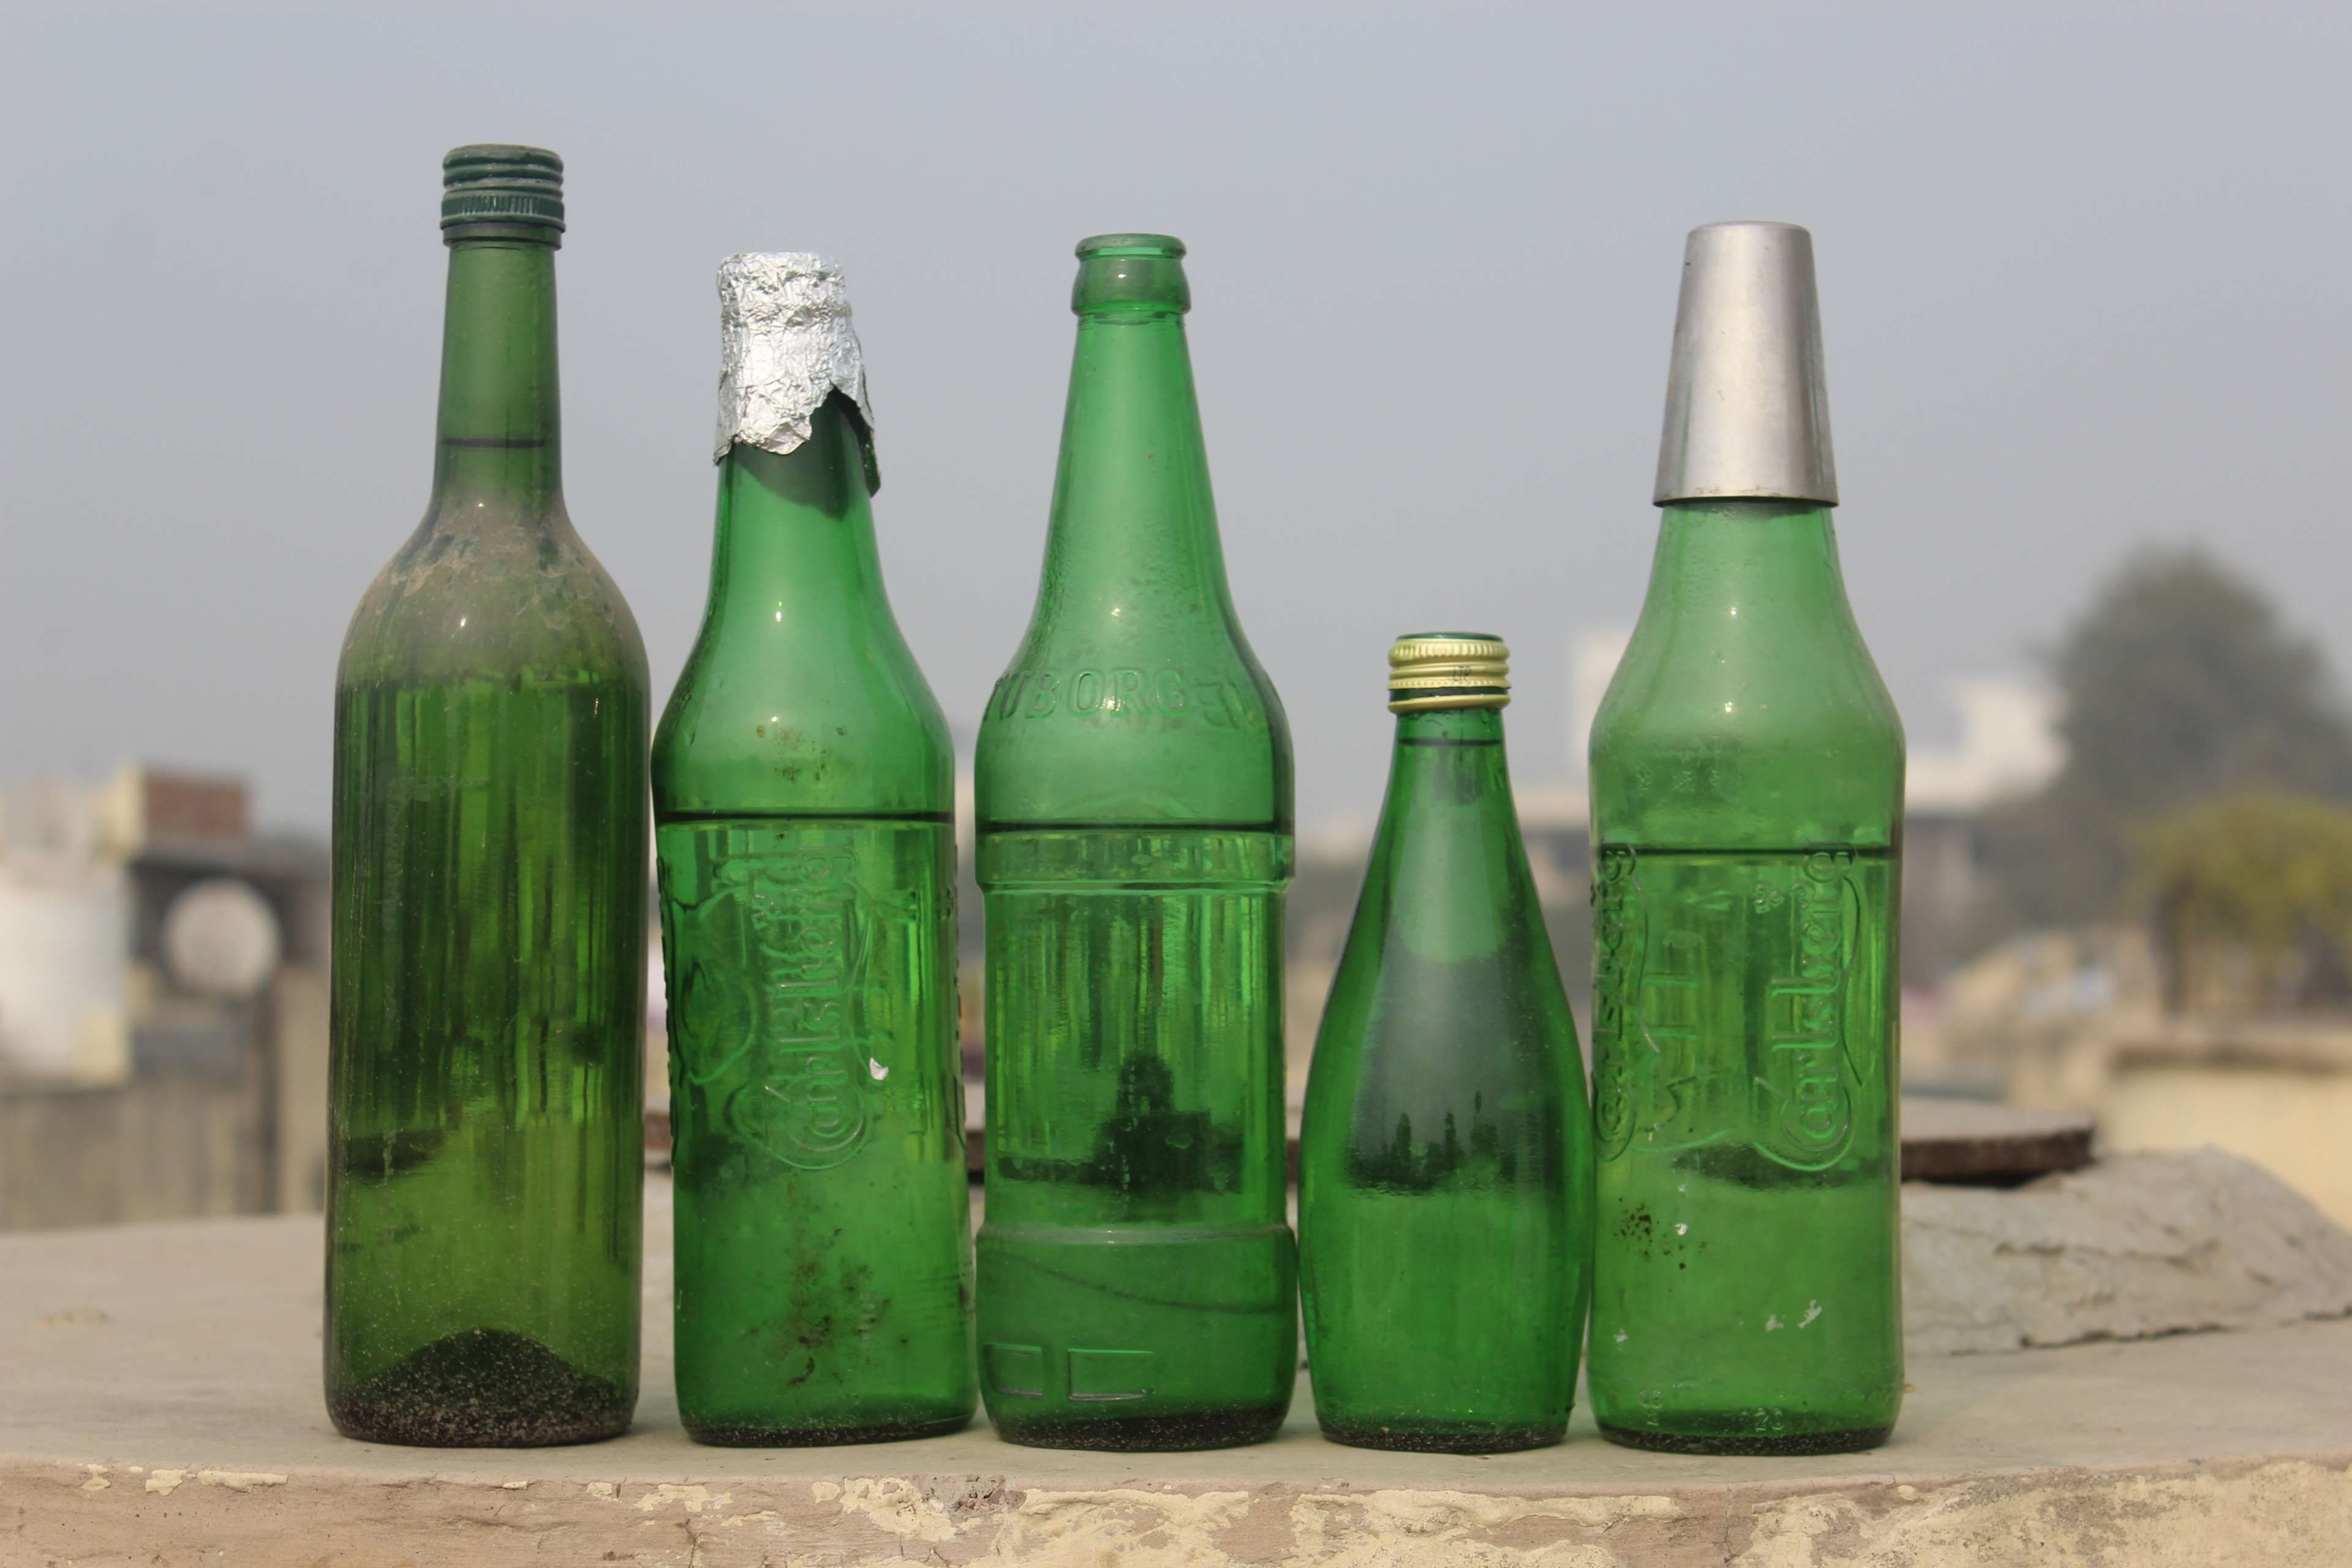 beer #beer bottle #bottles #empty bottles #life in a bottle. Bottle, Empty bottles, Beer bottle